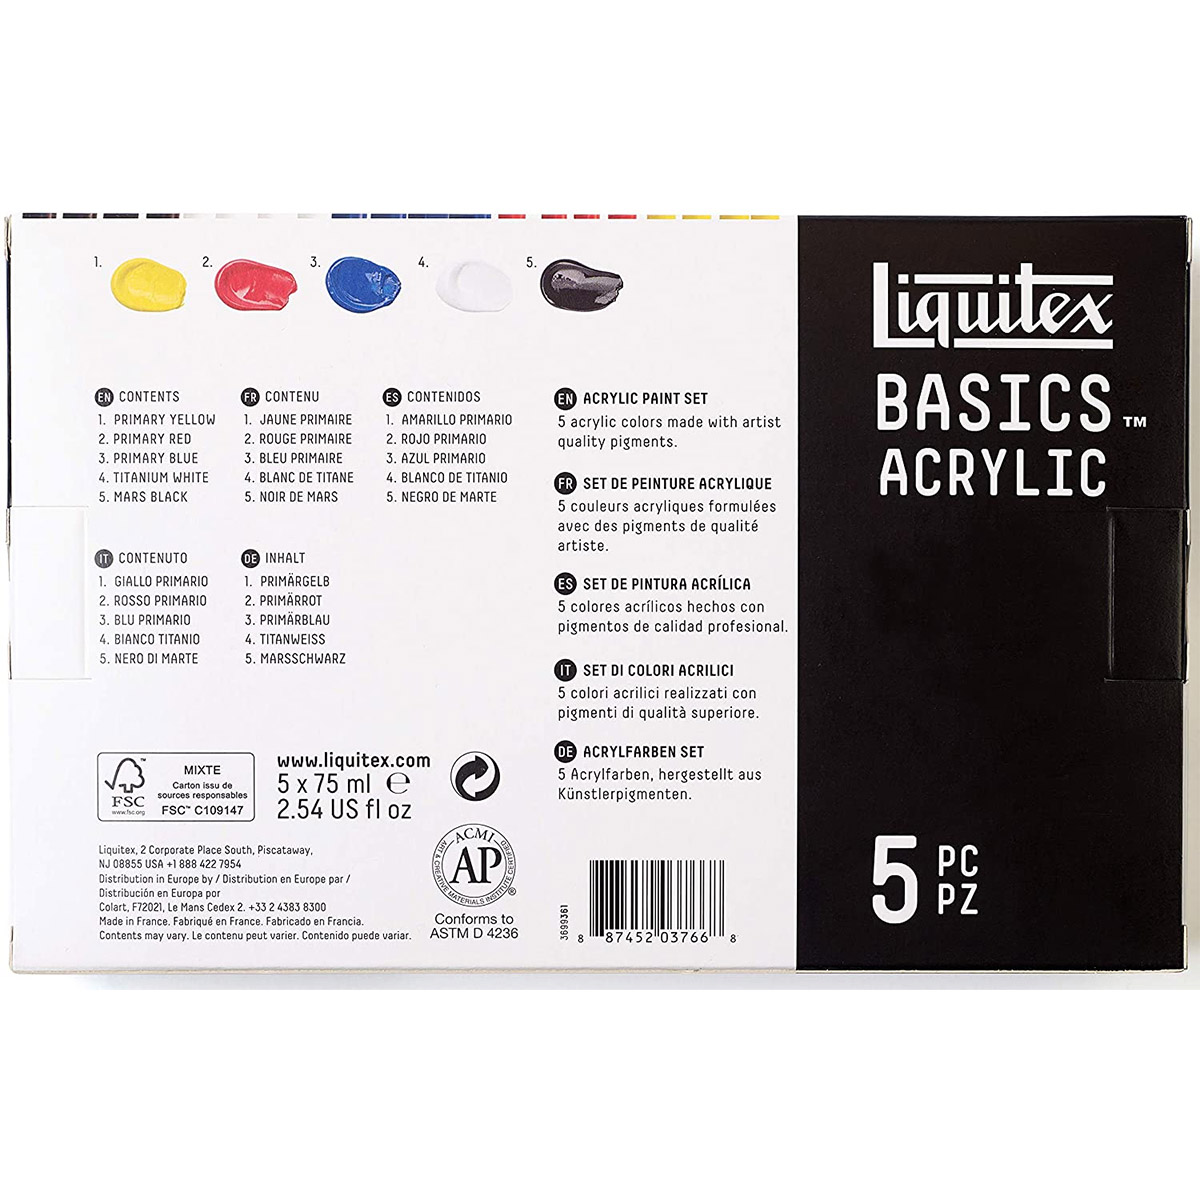 Liquitex Basics Acrylic Colors